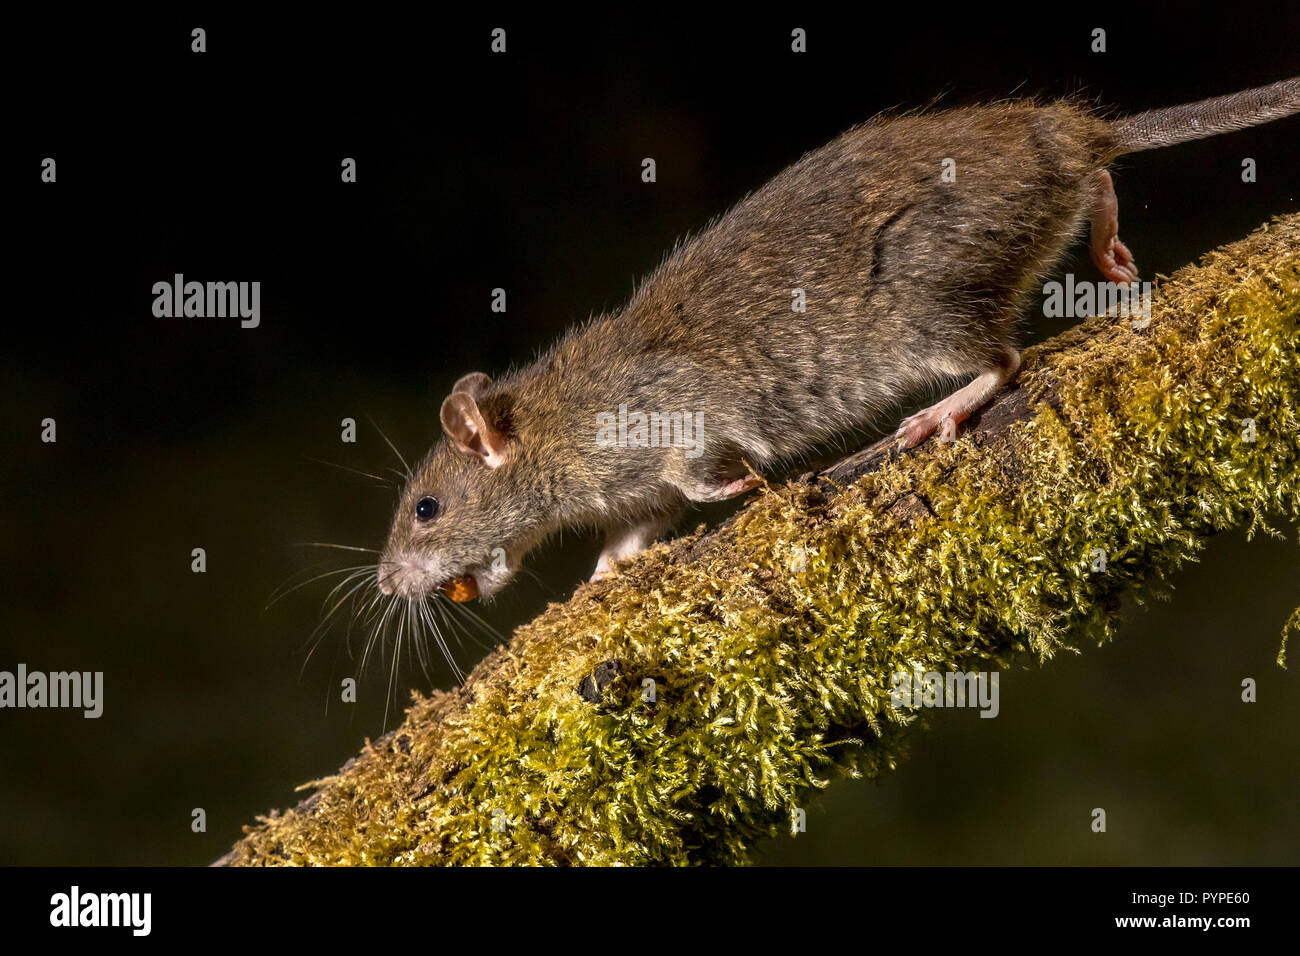 Wilde braune Ratte (Rattus norvegicus) auf log mit gestohlenen Mutter in der Nacht. High Speed Fotografie Bild Stockfoto